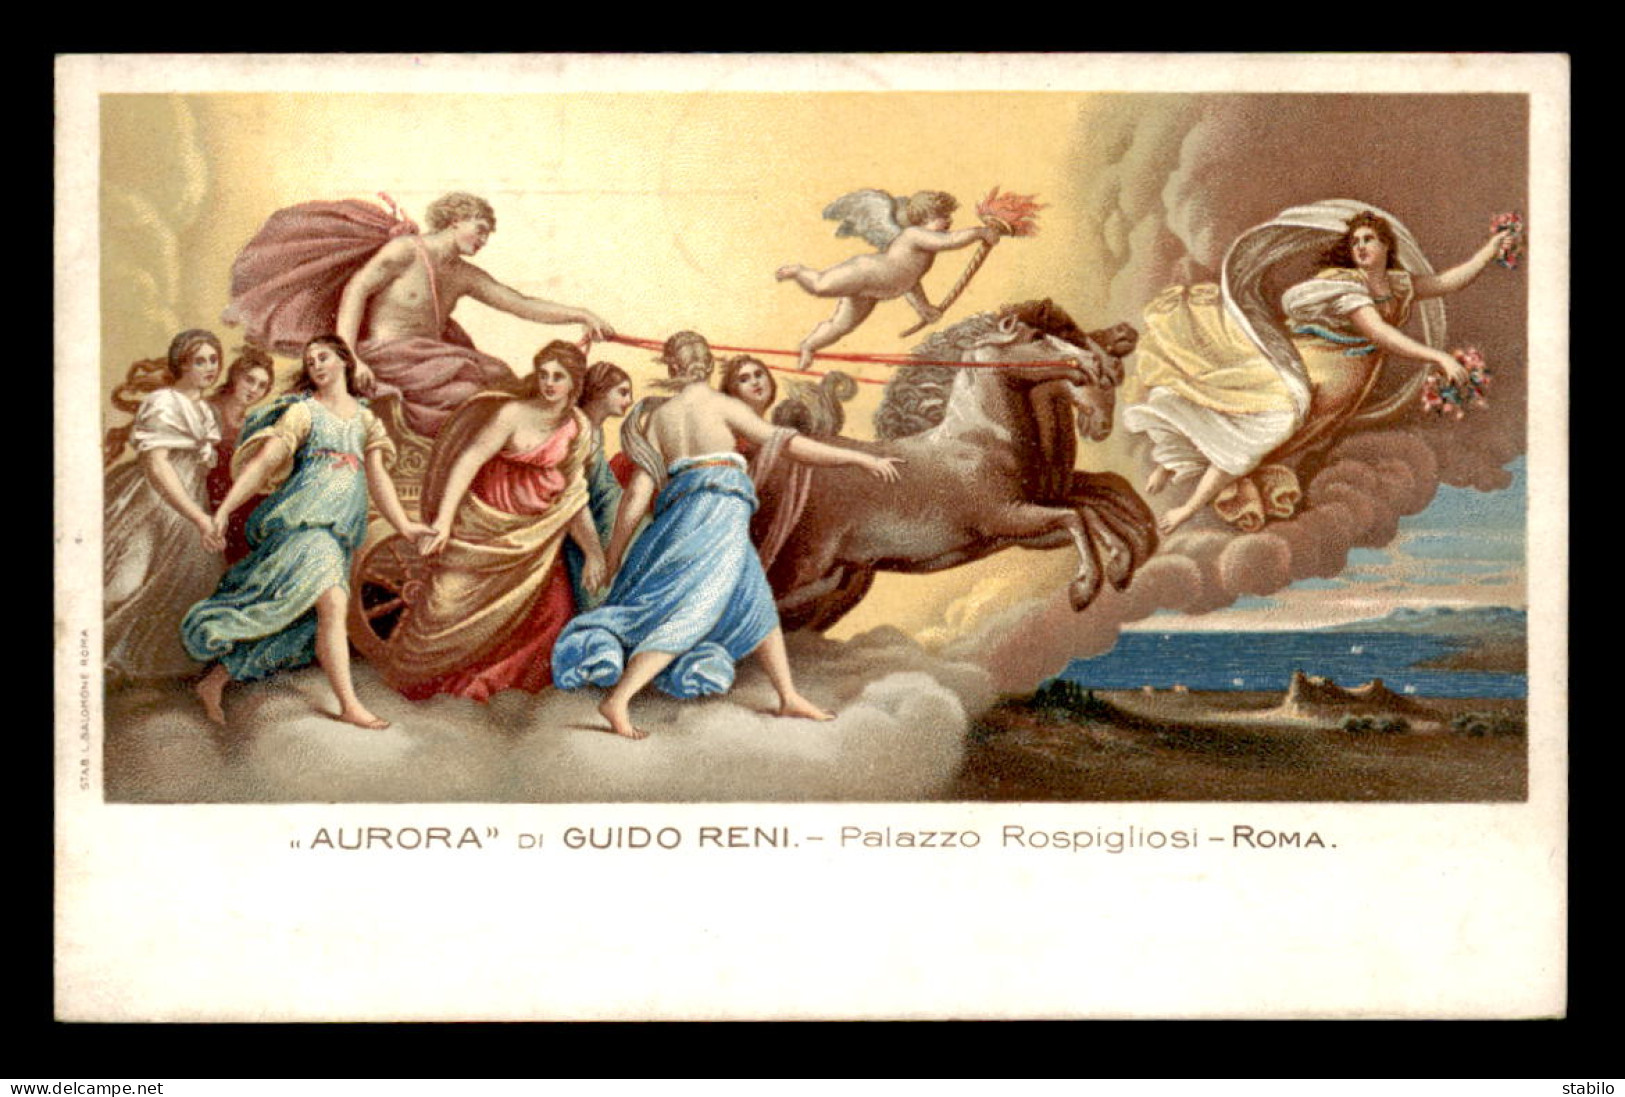 ITALIE - ROMA - PALAZZO ROSPIGLIOSI - AURORA, DI GUIDO RENI - Musea